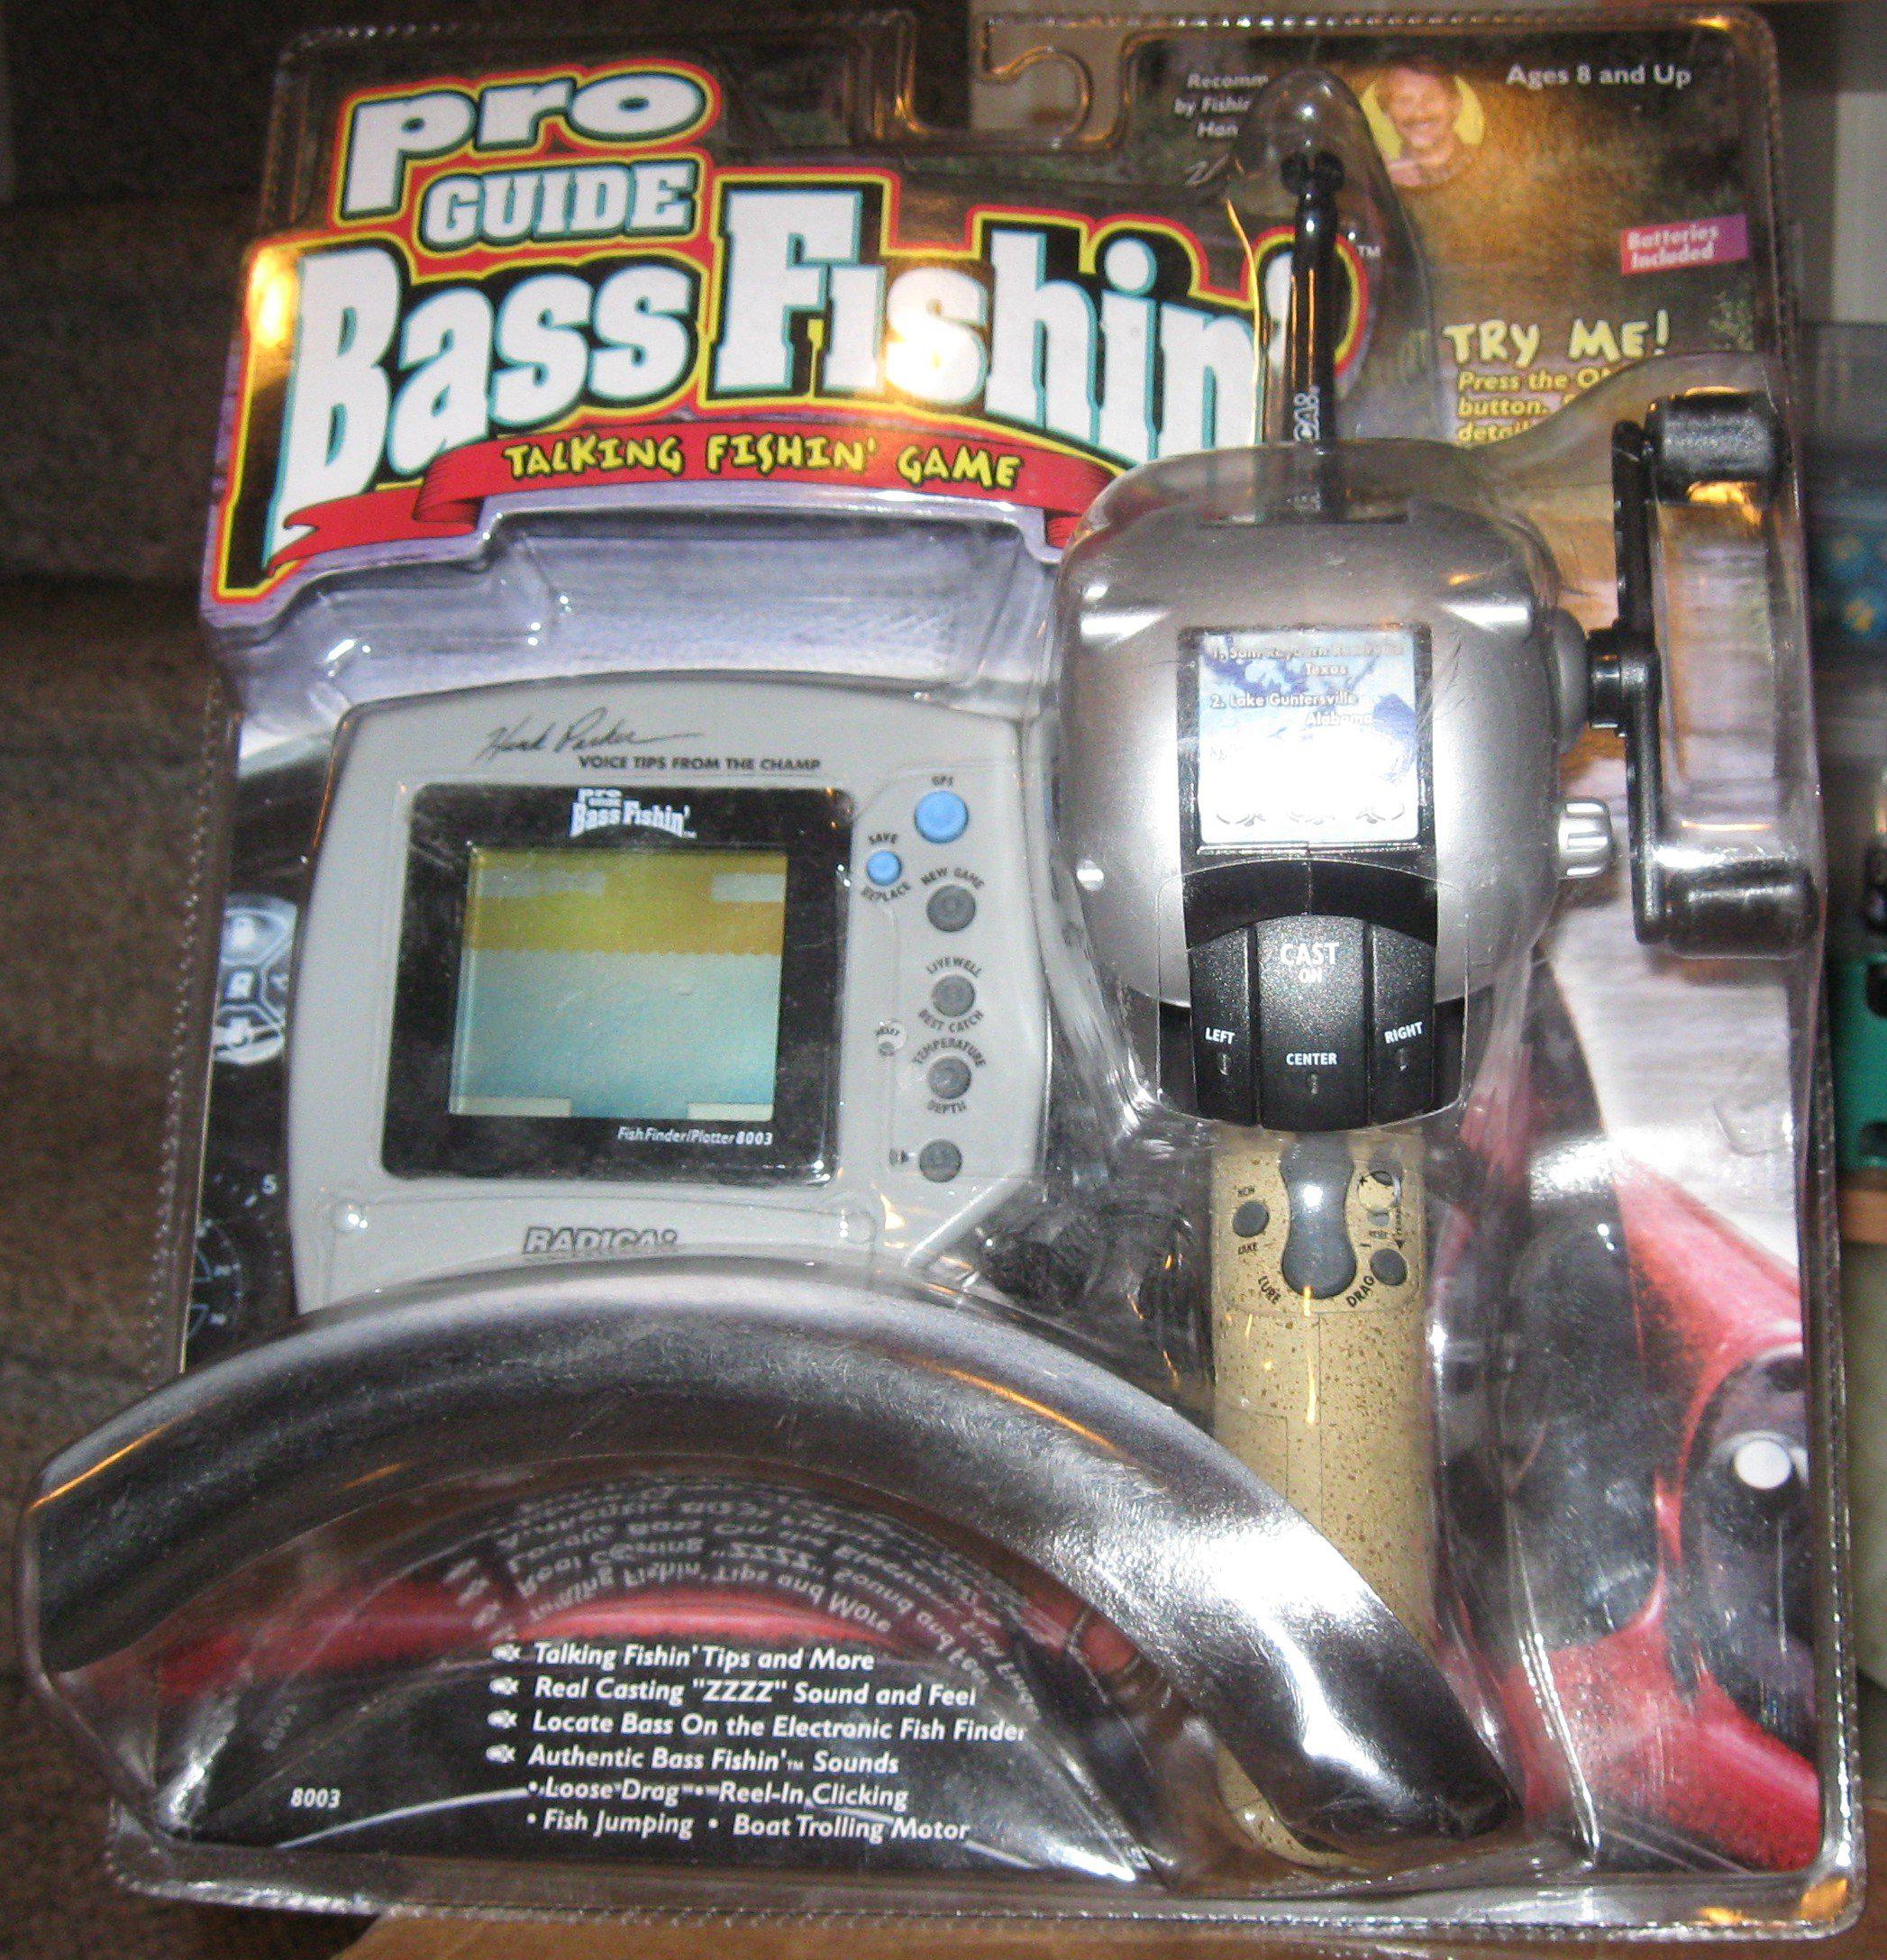 Radica pro guide bass fishin' - electronic handheld talking fishing game (radica)